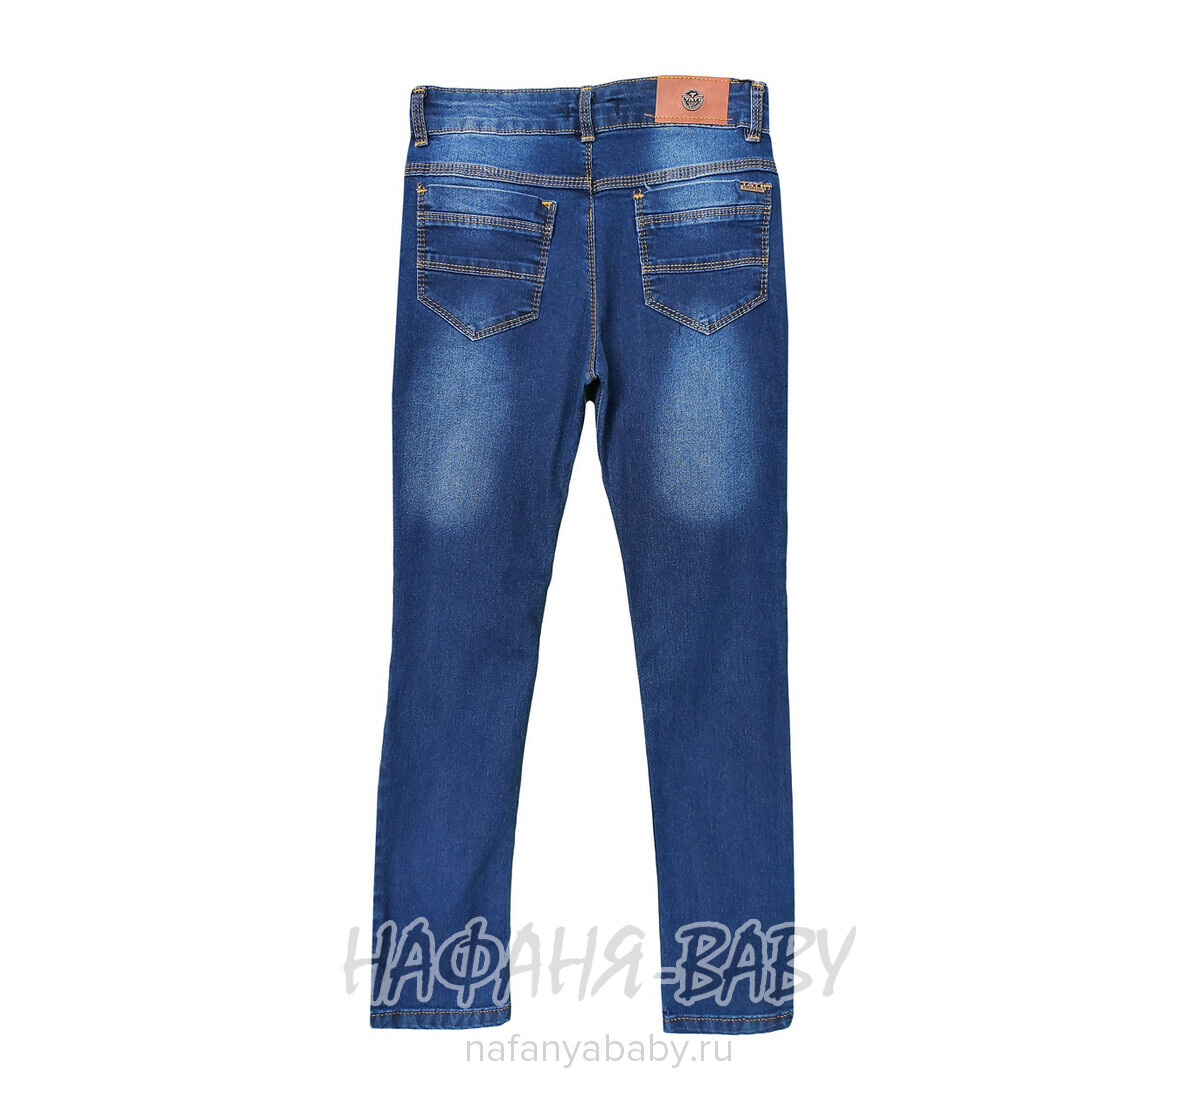 Подростковые джинсы TATI Jeans арт: 6214, 10-15 лет, цвет синий, оптом Турция